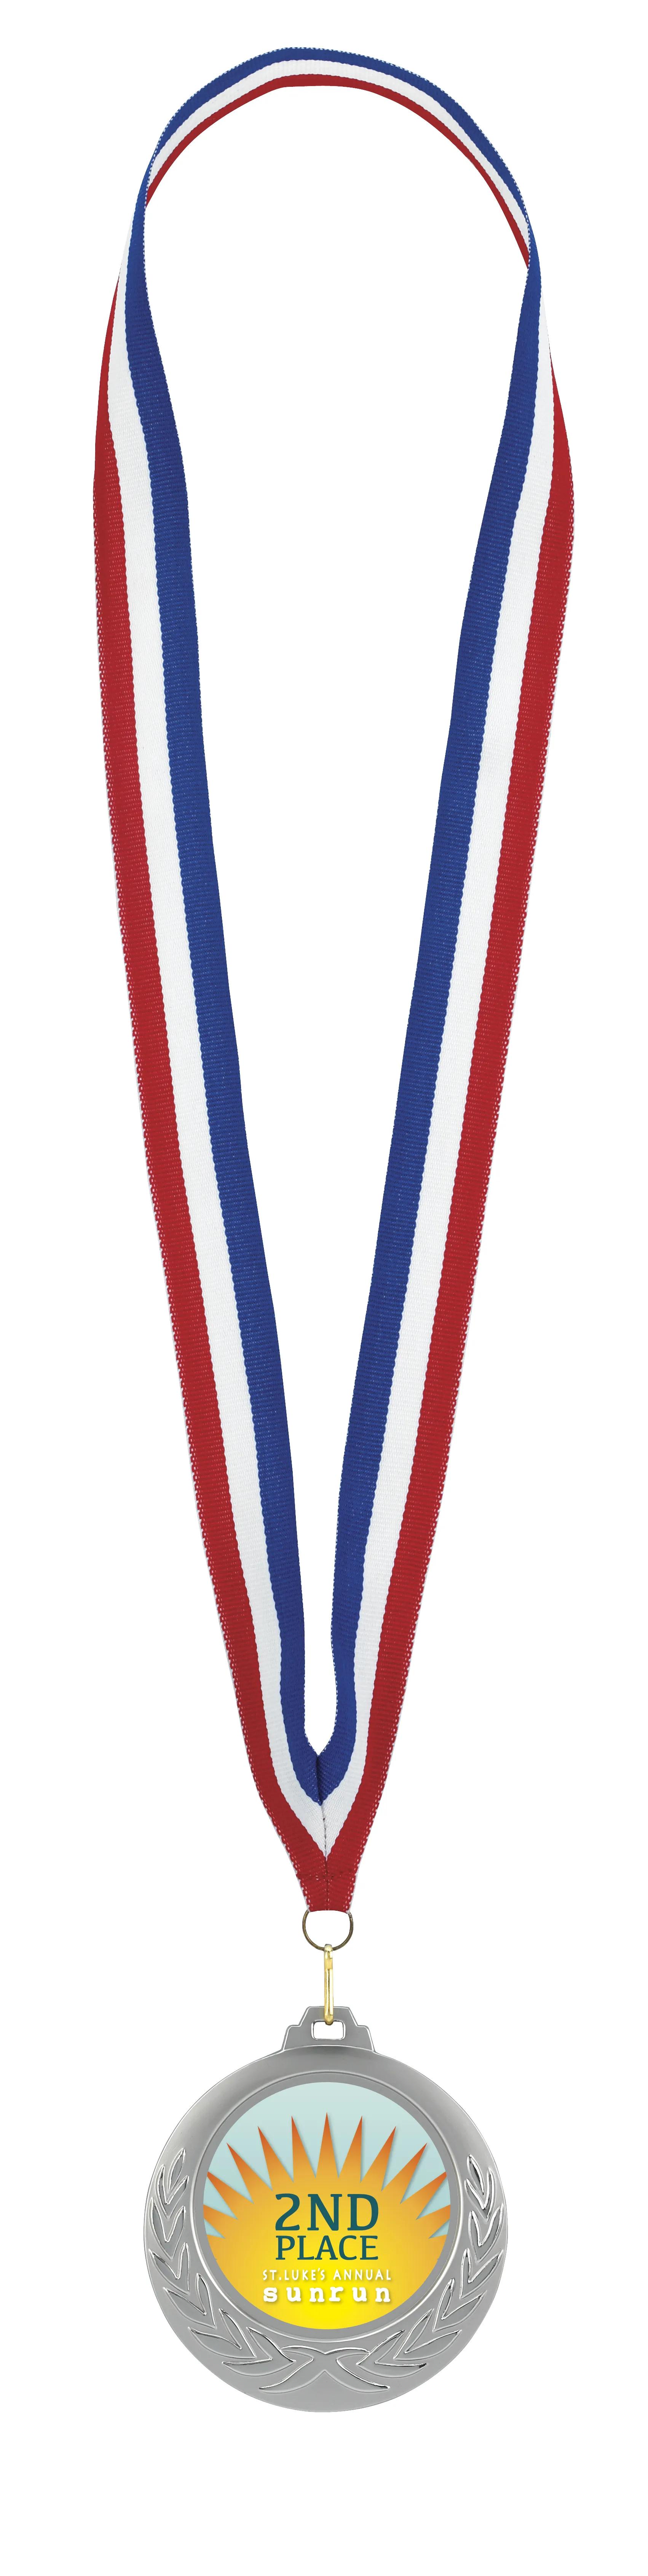 Laurel Wreath Medal 16 of 26